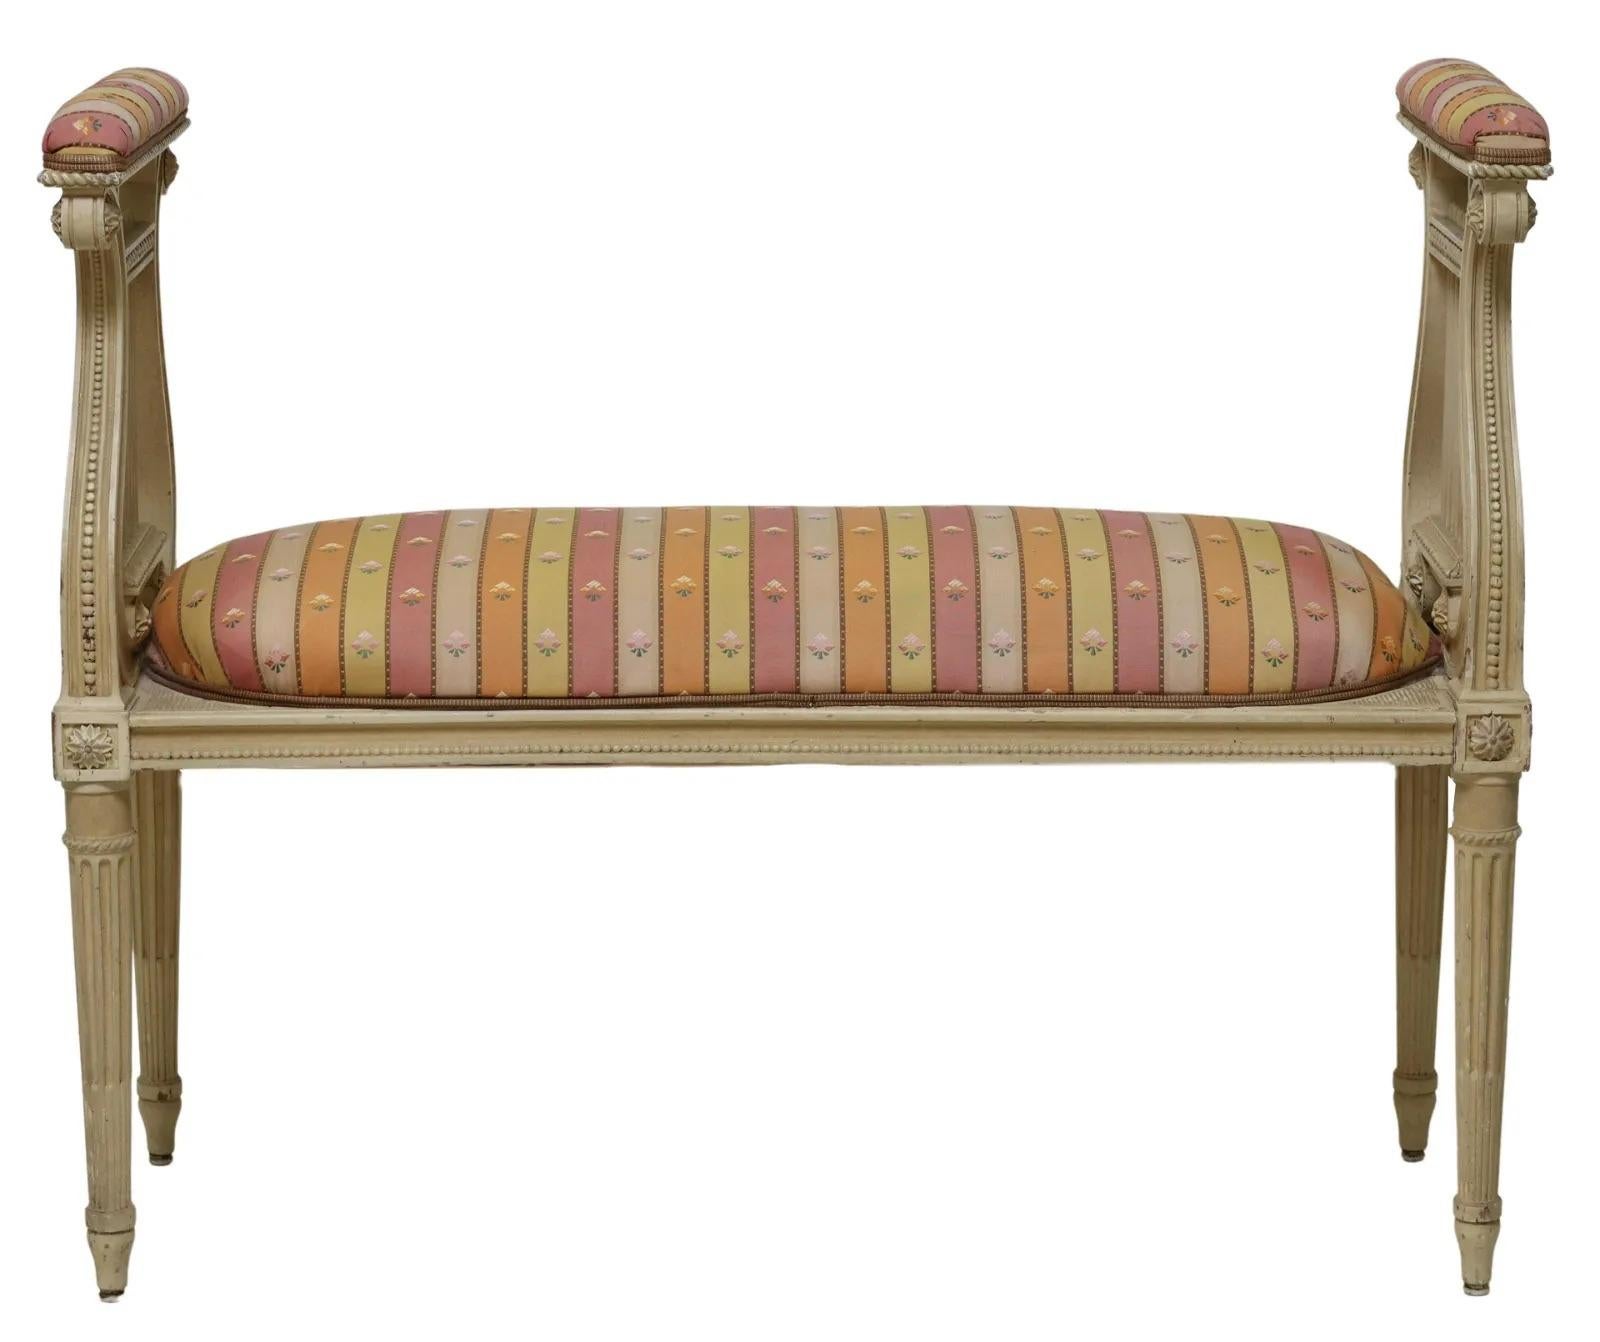 Musik- oder Bettbank im Louis XVI-Stil, 20. Jh., cremefarben lackiert, mit zwei hohen Lyra-Enden, die den gepolsterten Sitz flankieren, alles auf konischen, gerippten Beinen stehend.

Abmessungen: ca. 32,5 